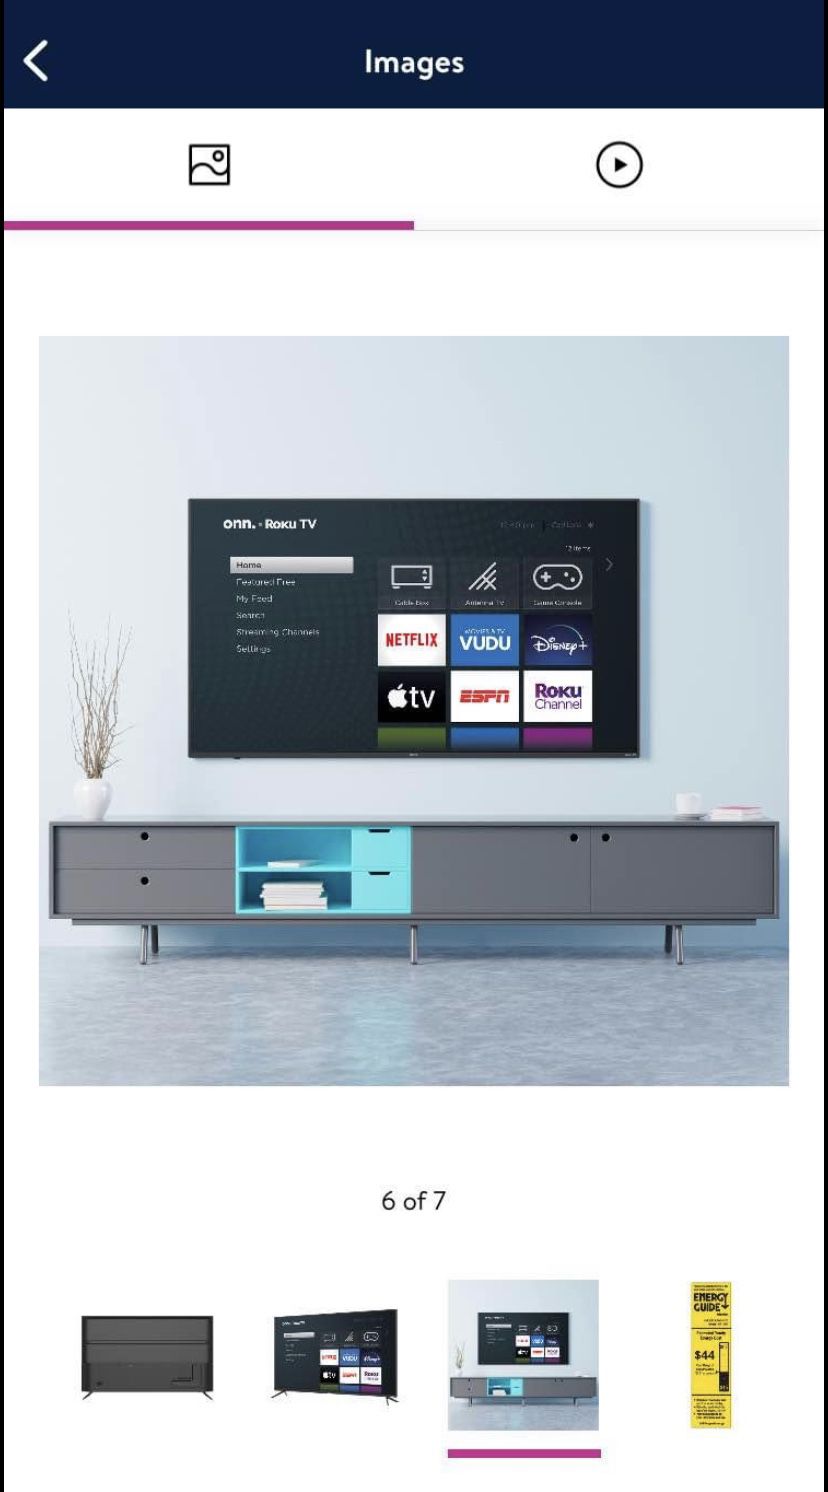 New 70 inch Smart Roku TV - still in box